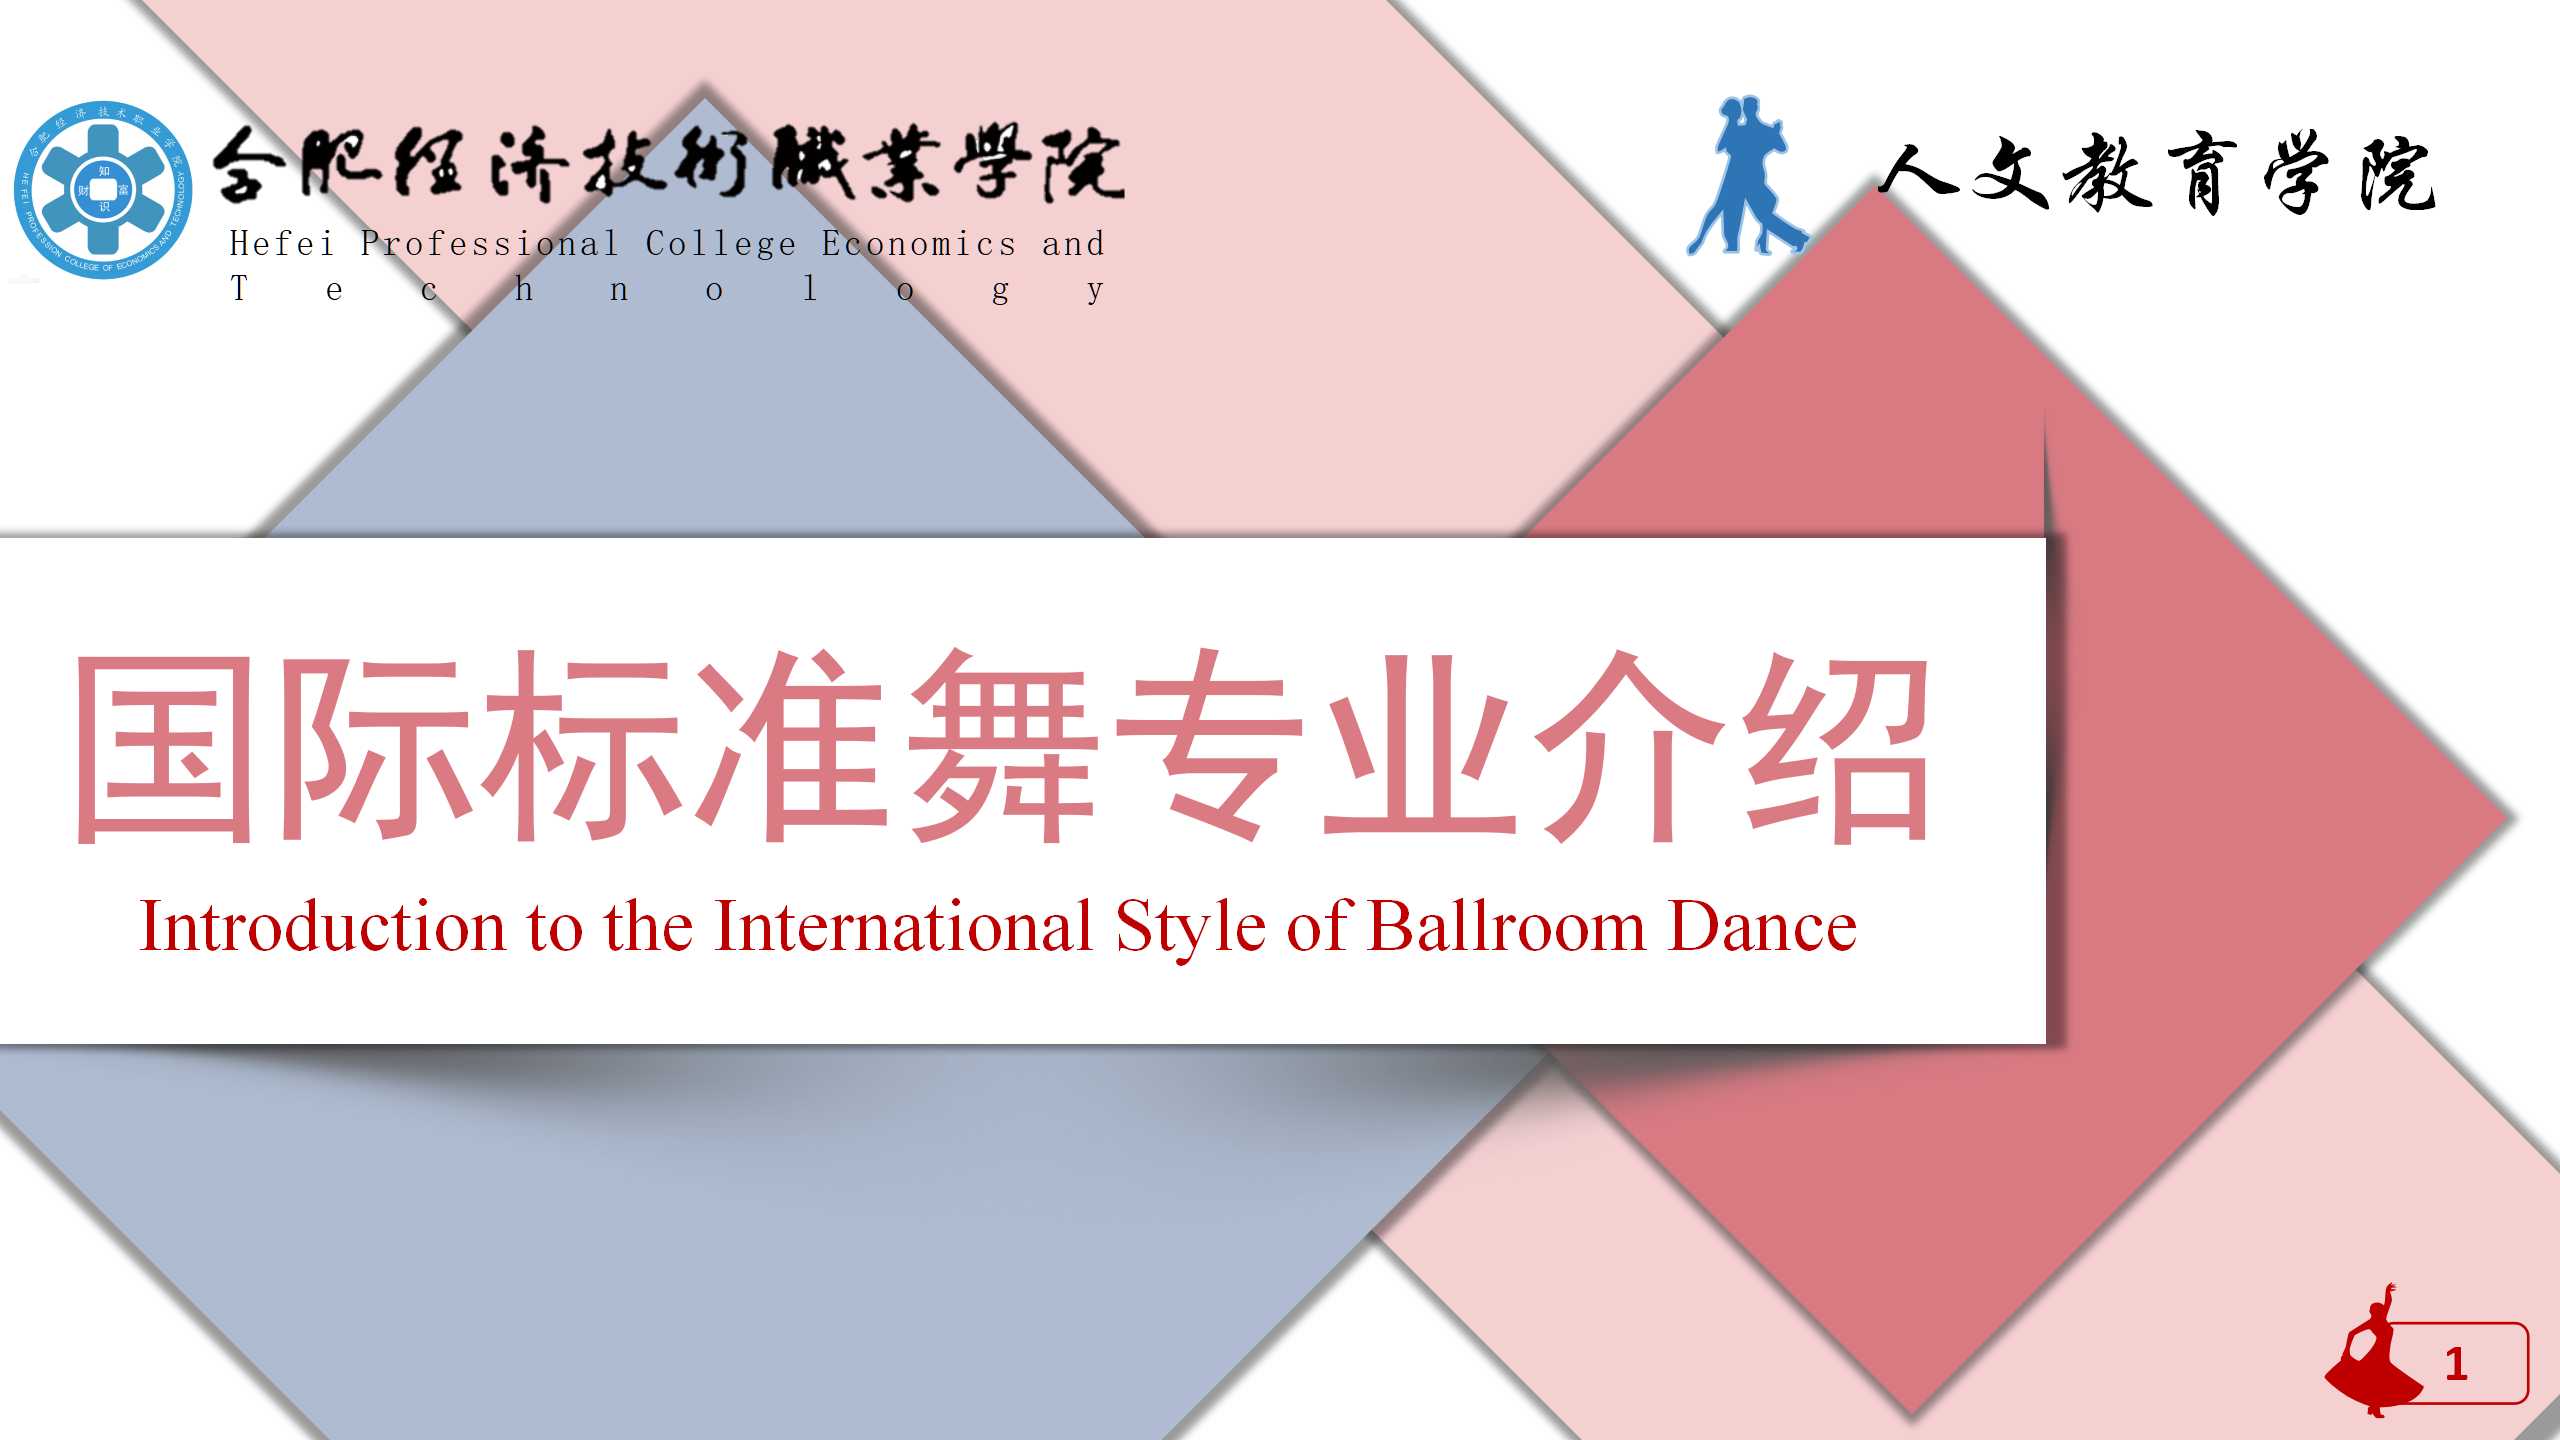 国际标准舞专业介绍(1)_01.png